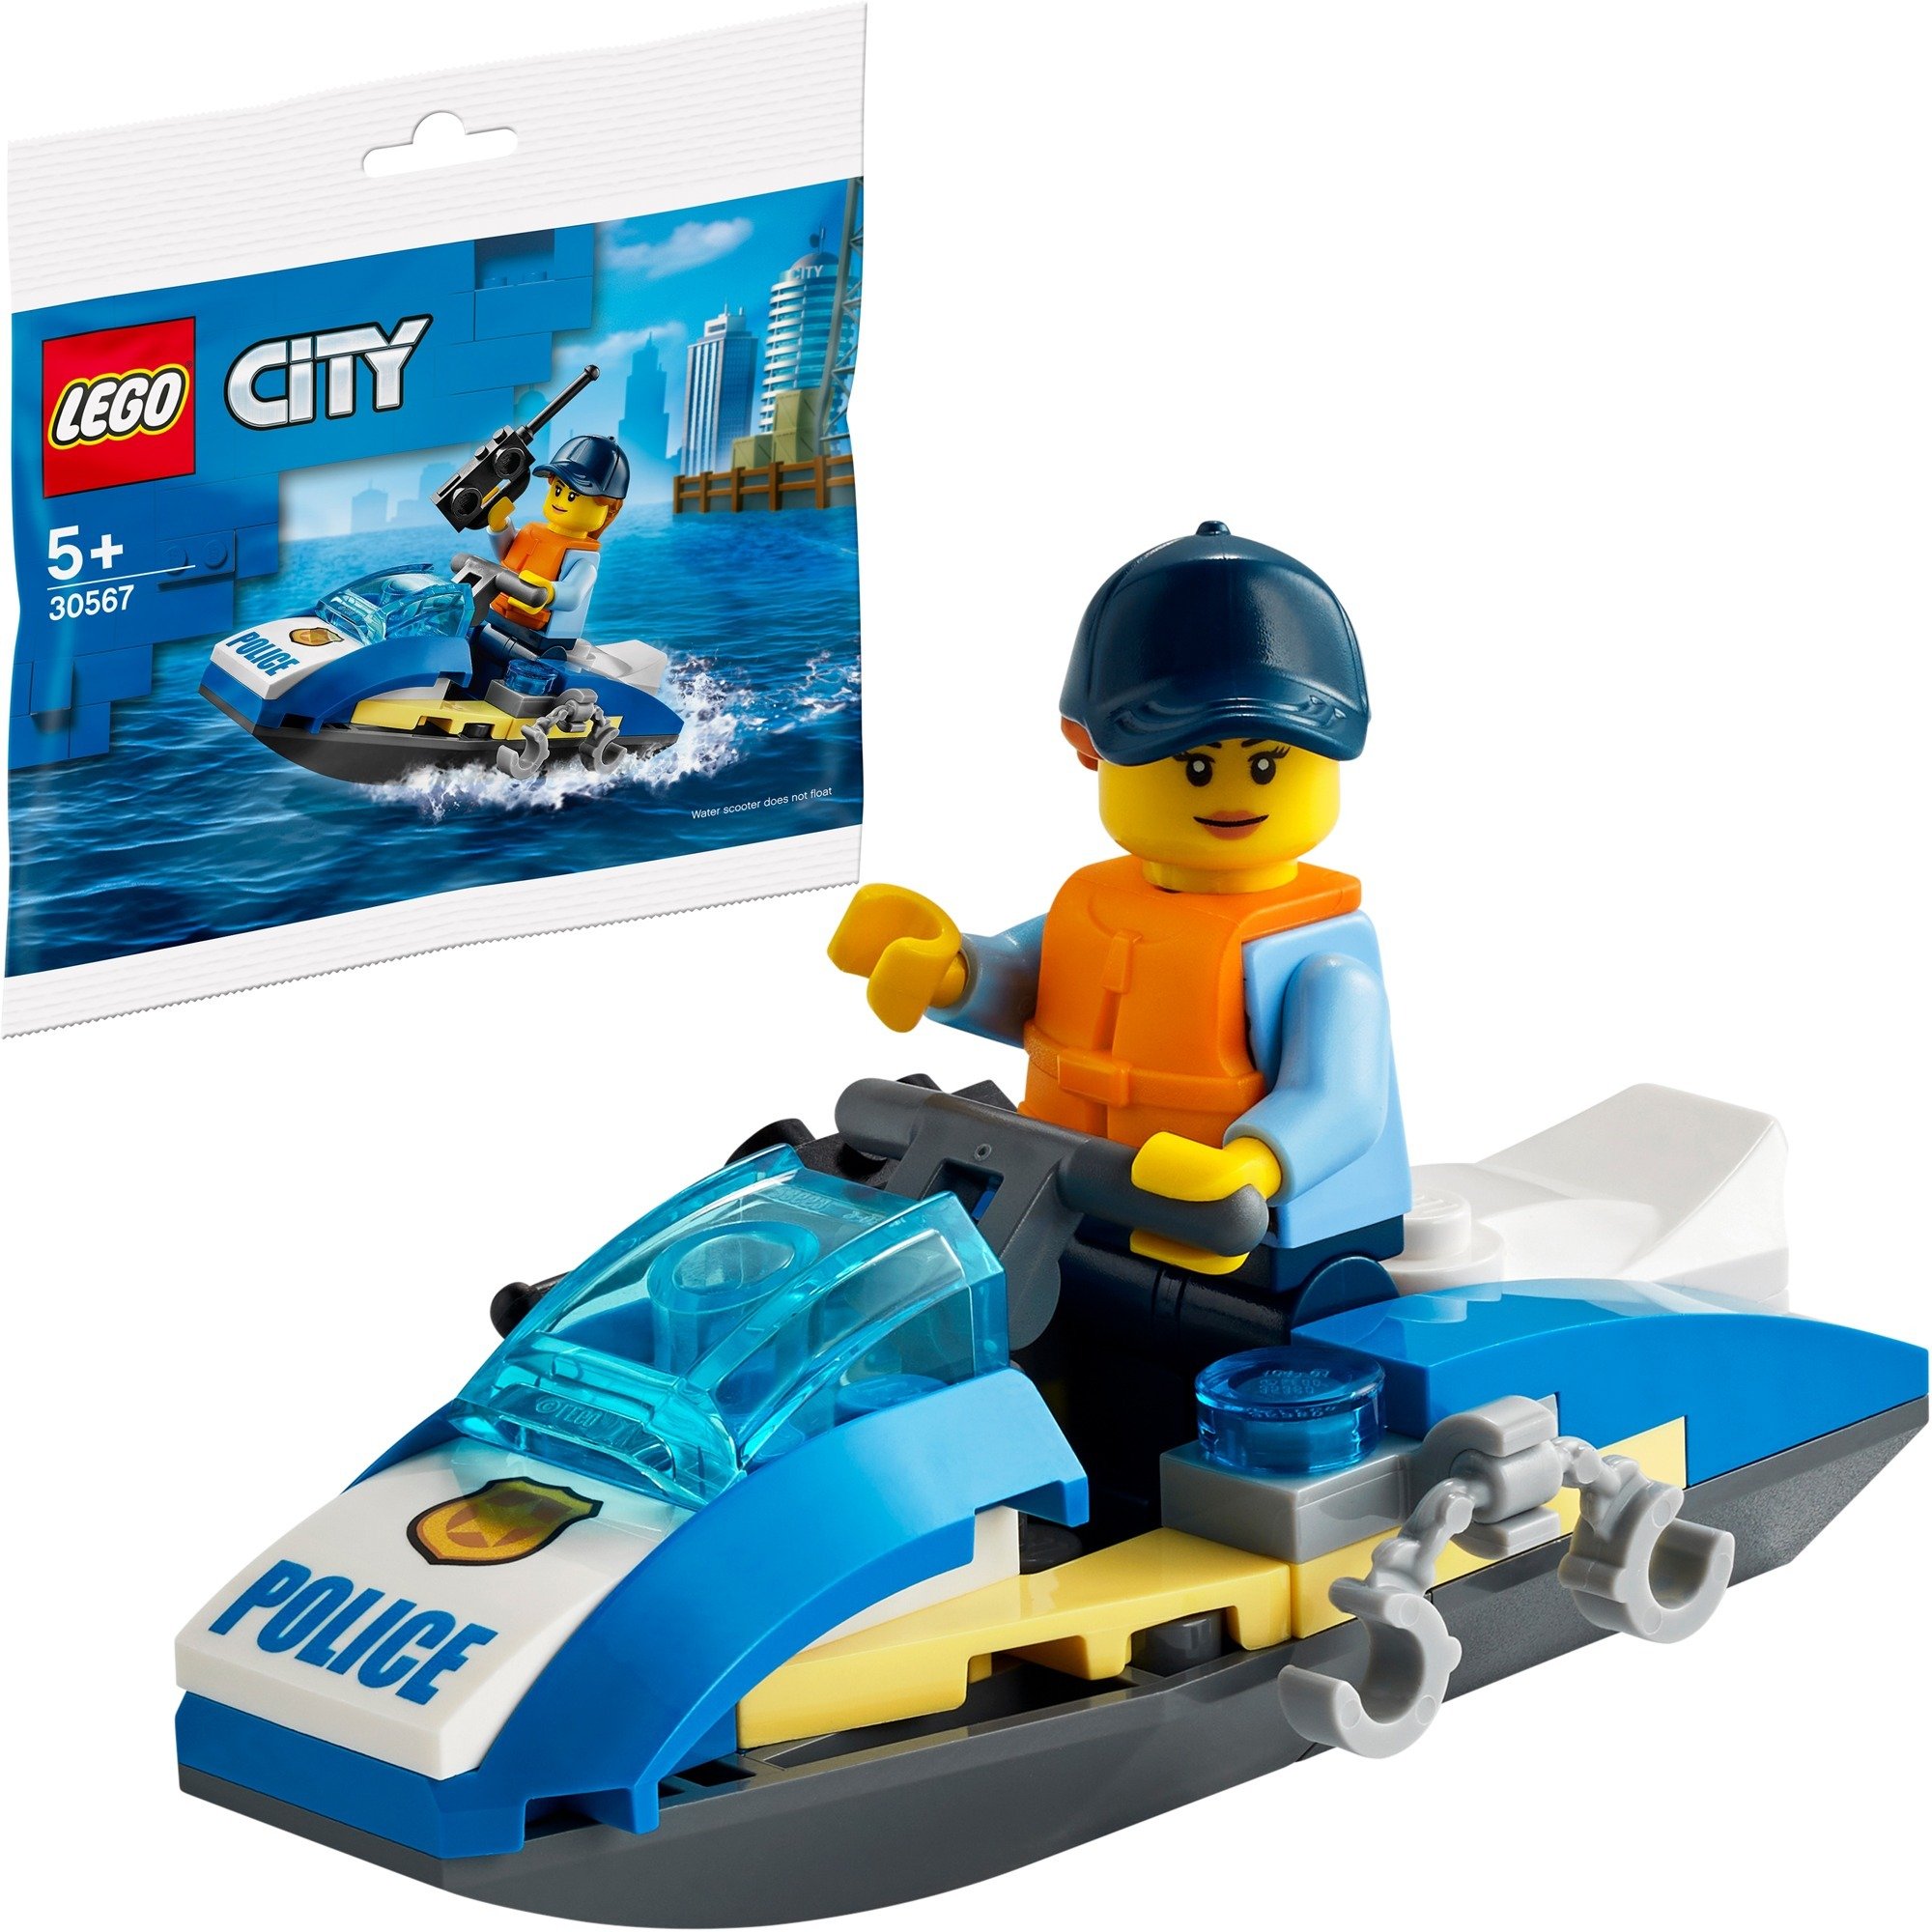 Spielzeug: Lego 30567 City Polizei Jetski